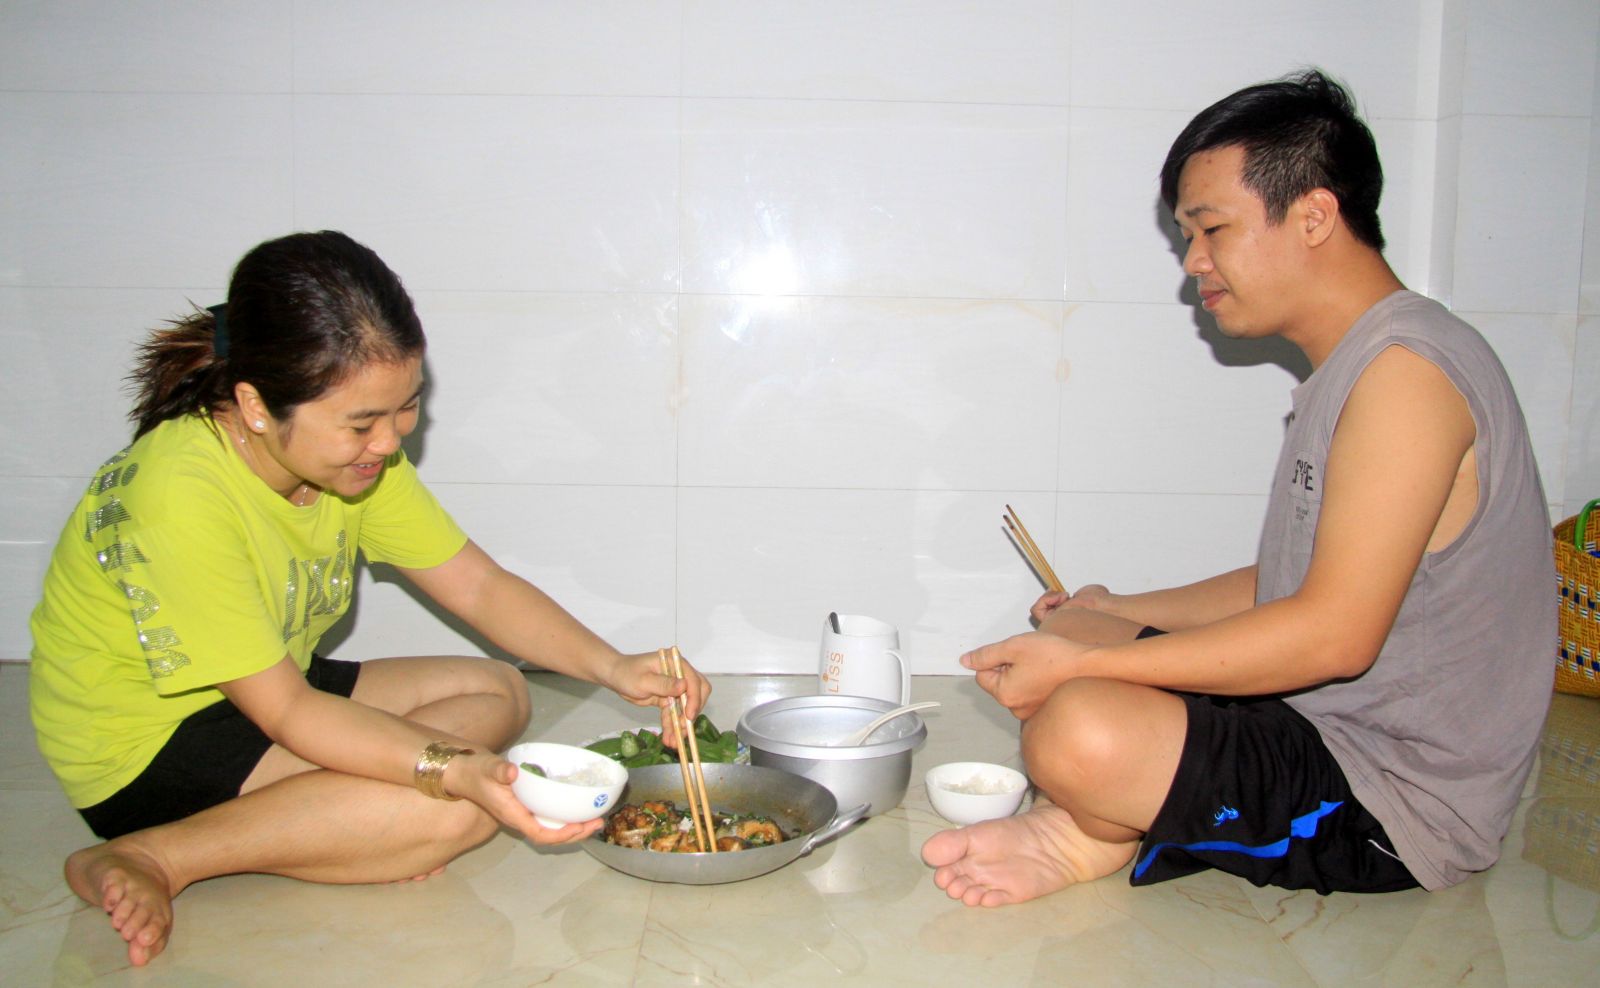 Với anh Trần Chí Tâm và chị Phạm Thị Thảnh, bữa cơm gia đình là một trong những khoảnh khắc hạnh phúc